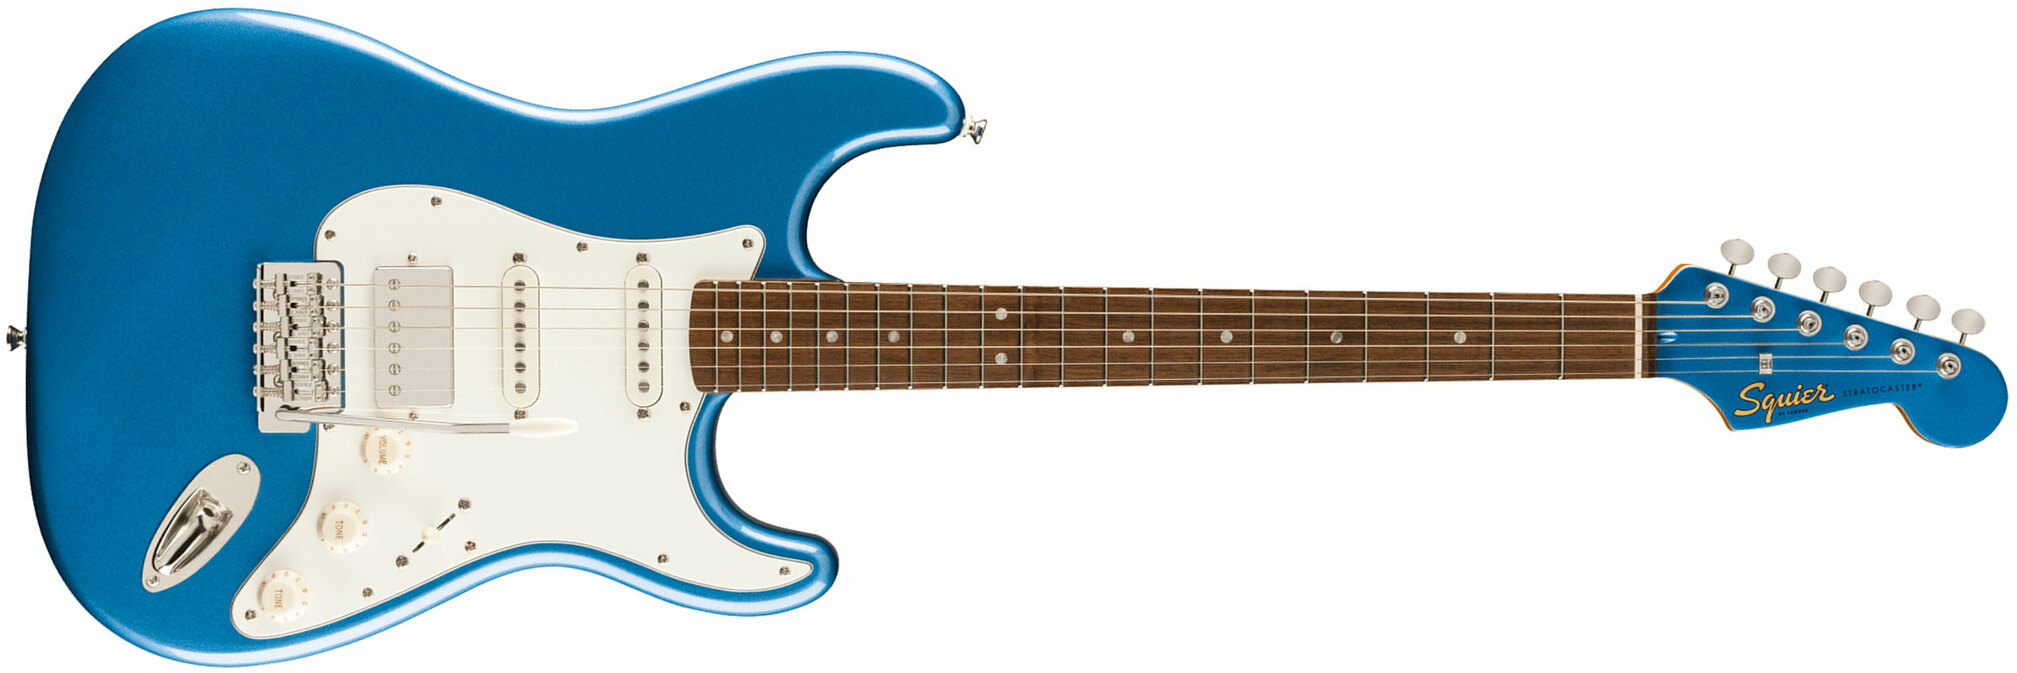 Squier Strat 60s Classic Vibe Ltd Hss Trem Lau - Lake Placid Blue - Retro rock electric guitar - Main picture